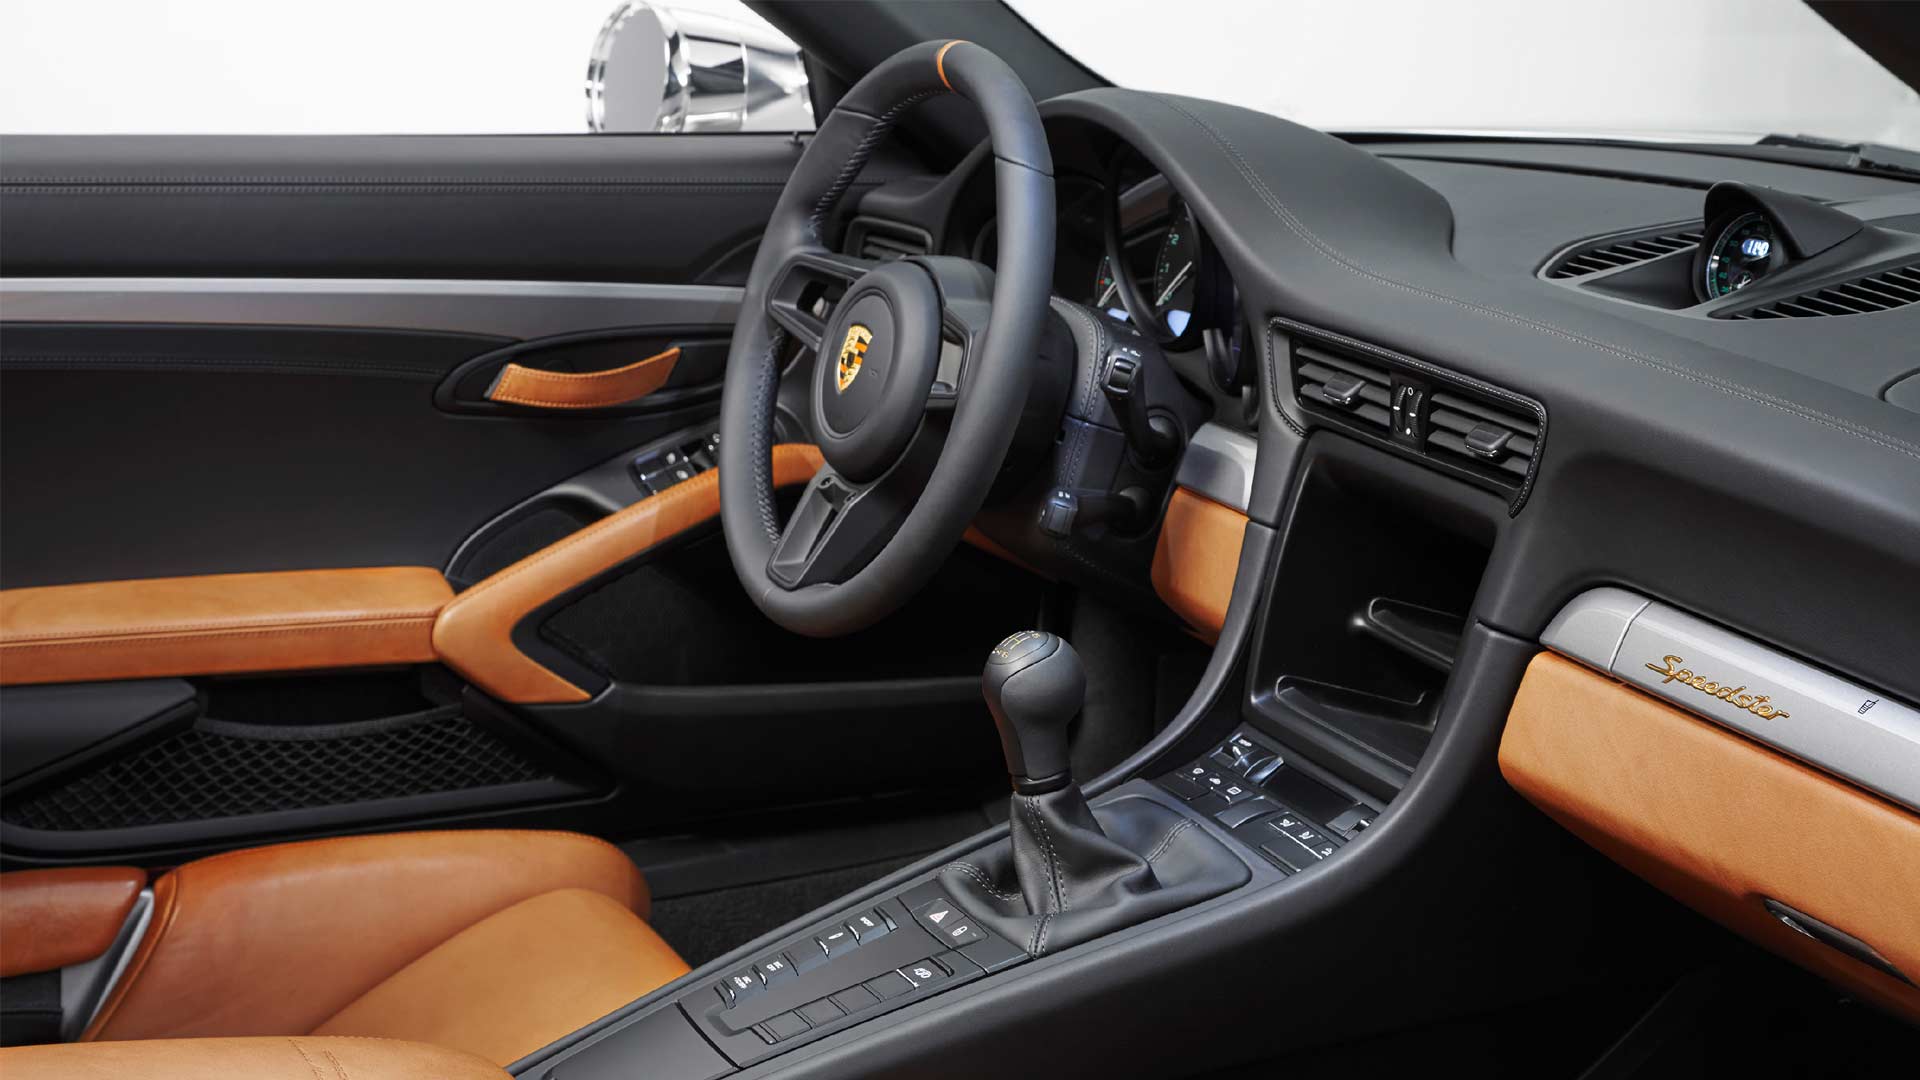 Porsche-911-Speedster-Concept-interior